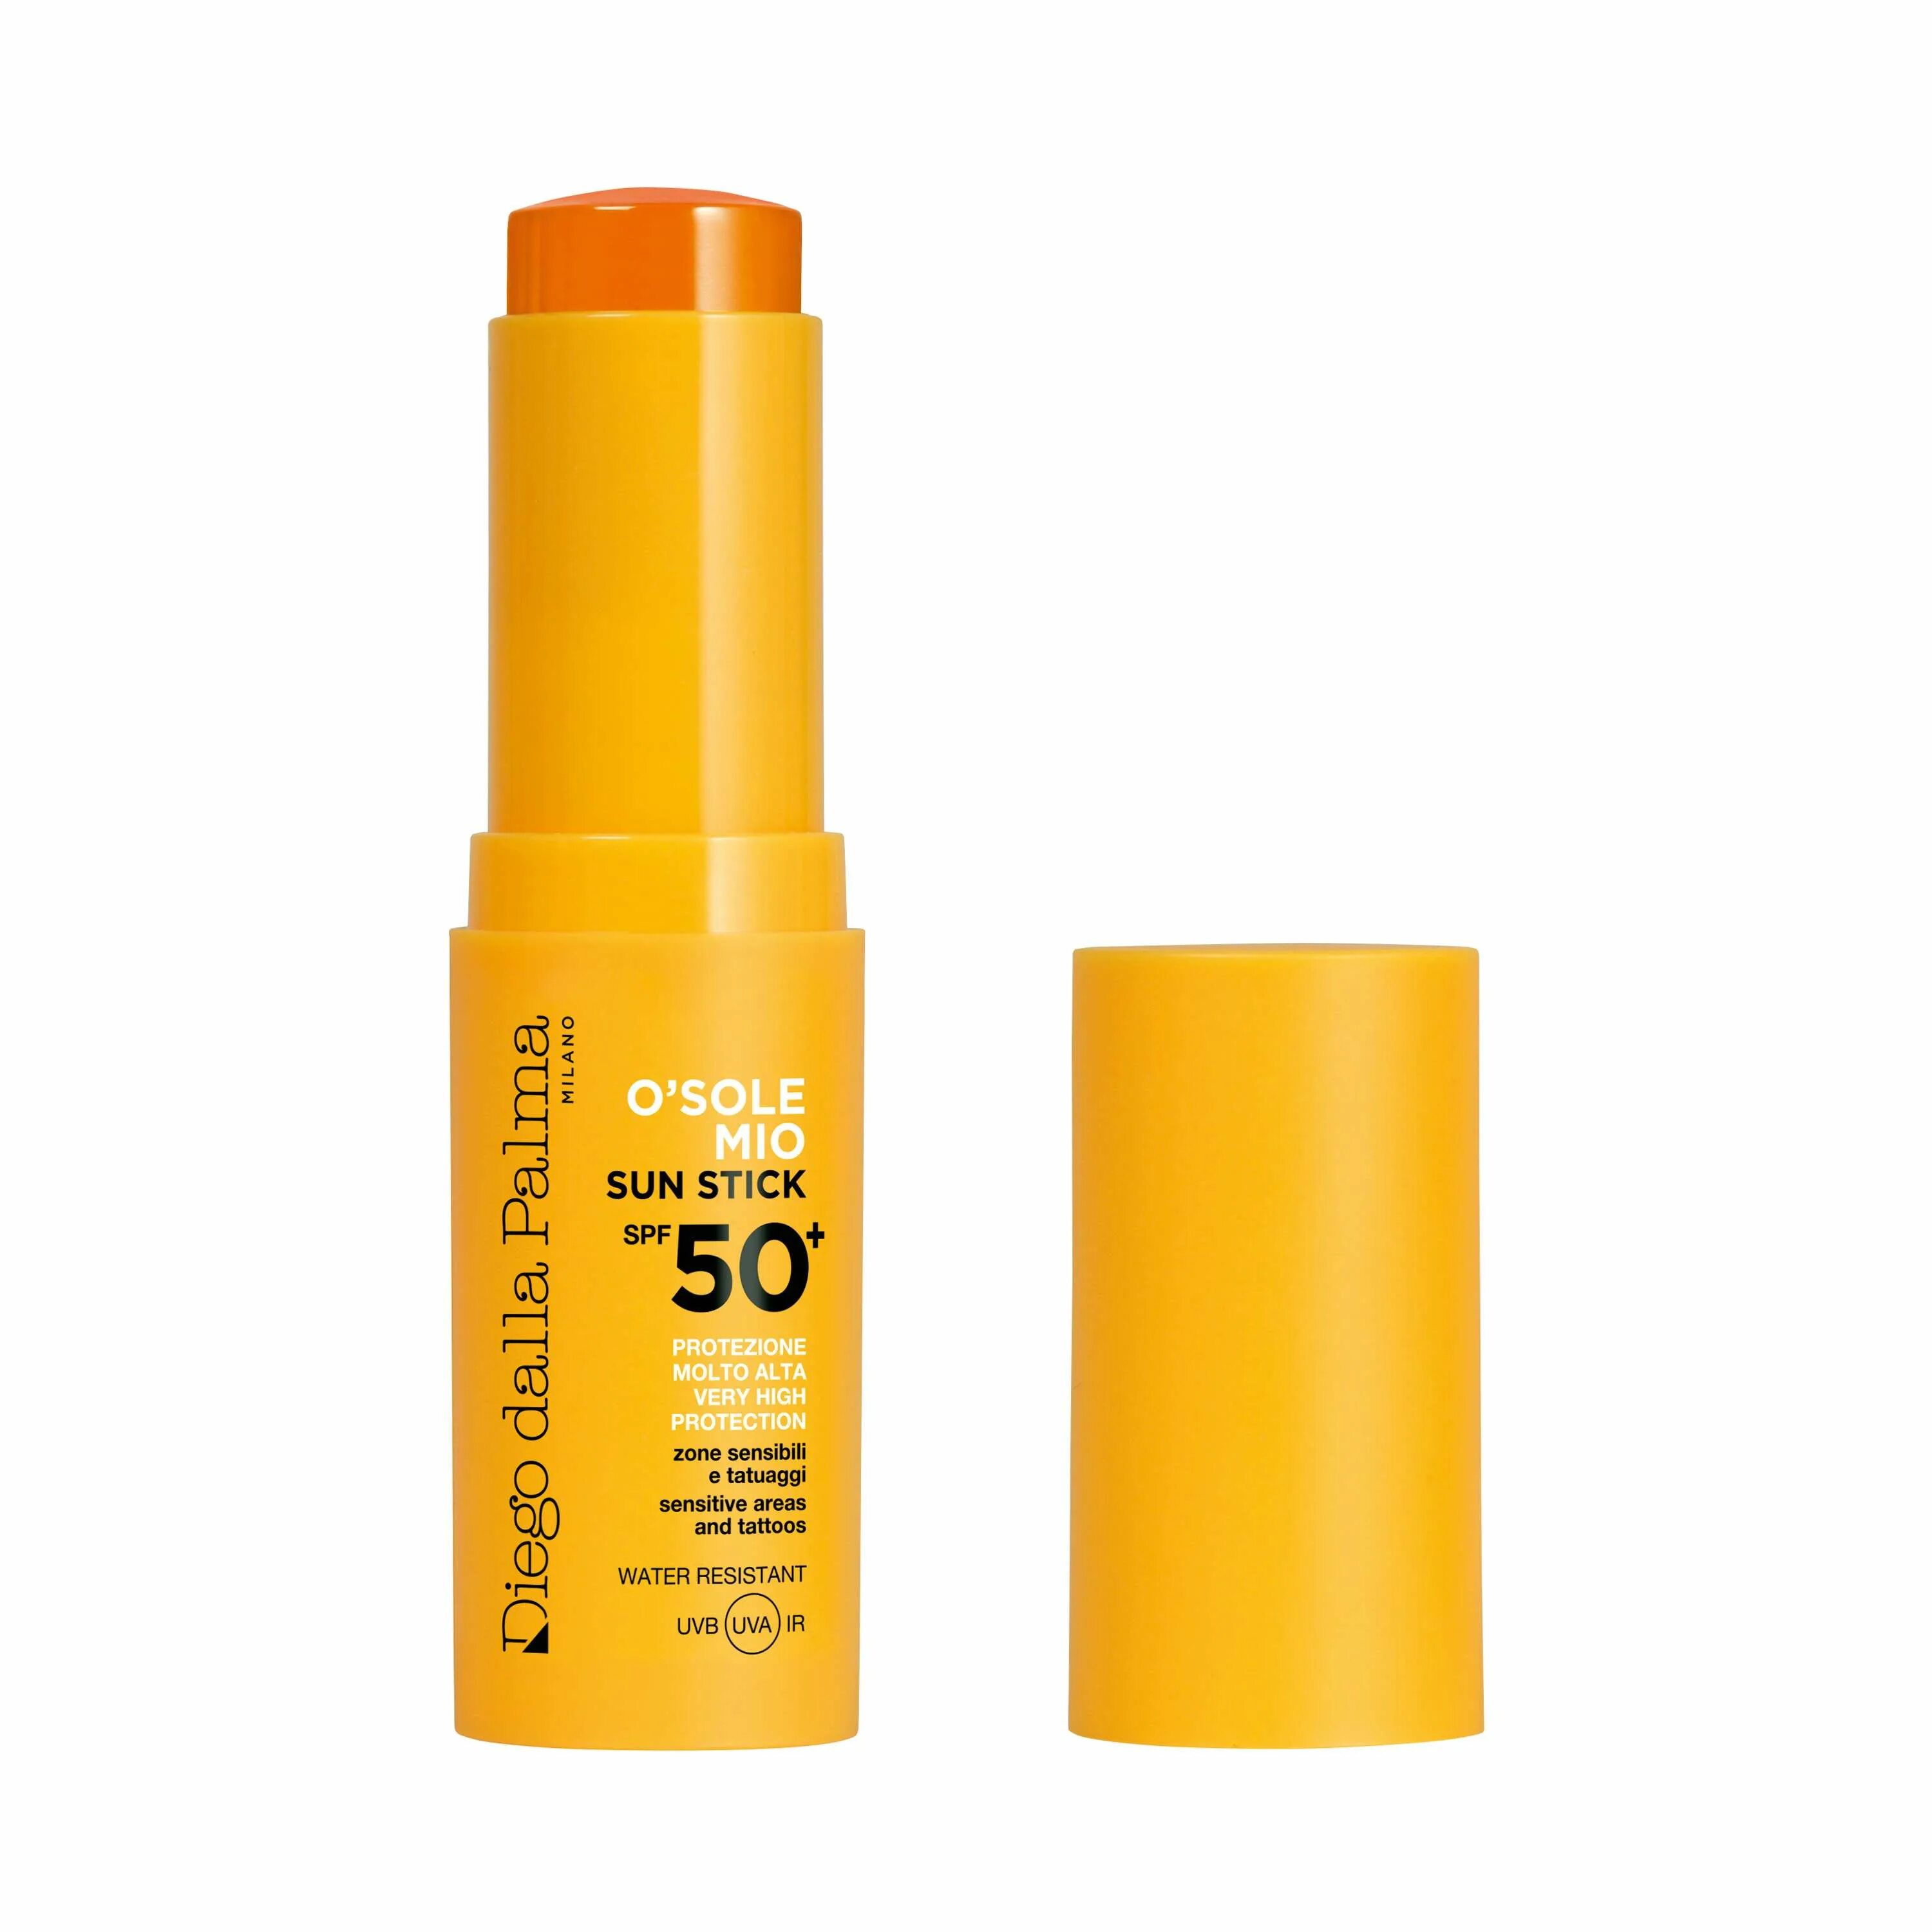 Солнцезащитный стик для лица spf. Стик СПФ 50. Стик солнцезащитный SPF 50+. Стик SPF 50 French. Стик SPF 50+ от Shiseido.